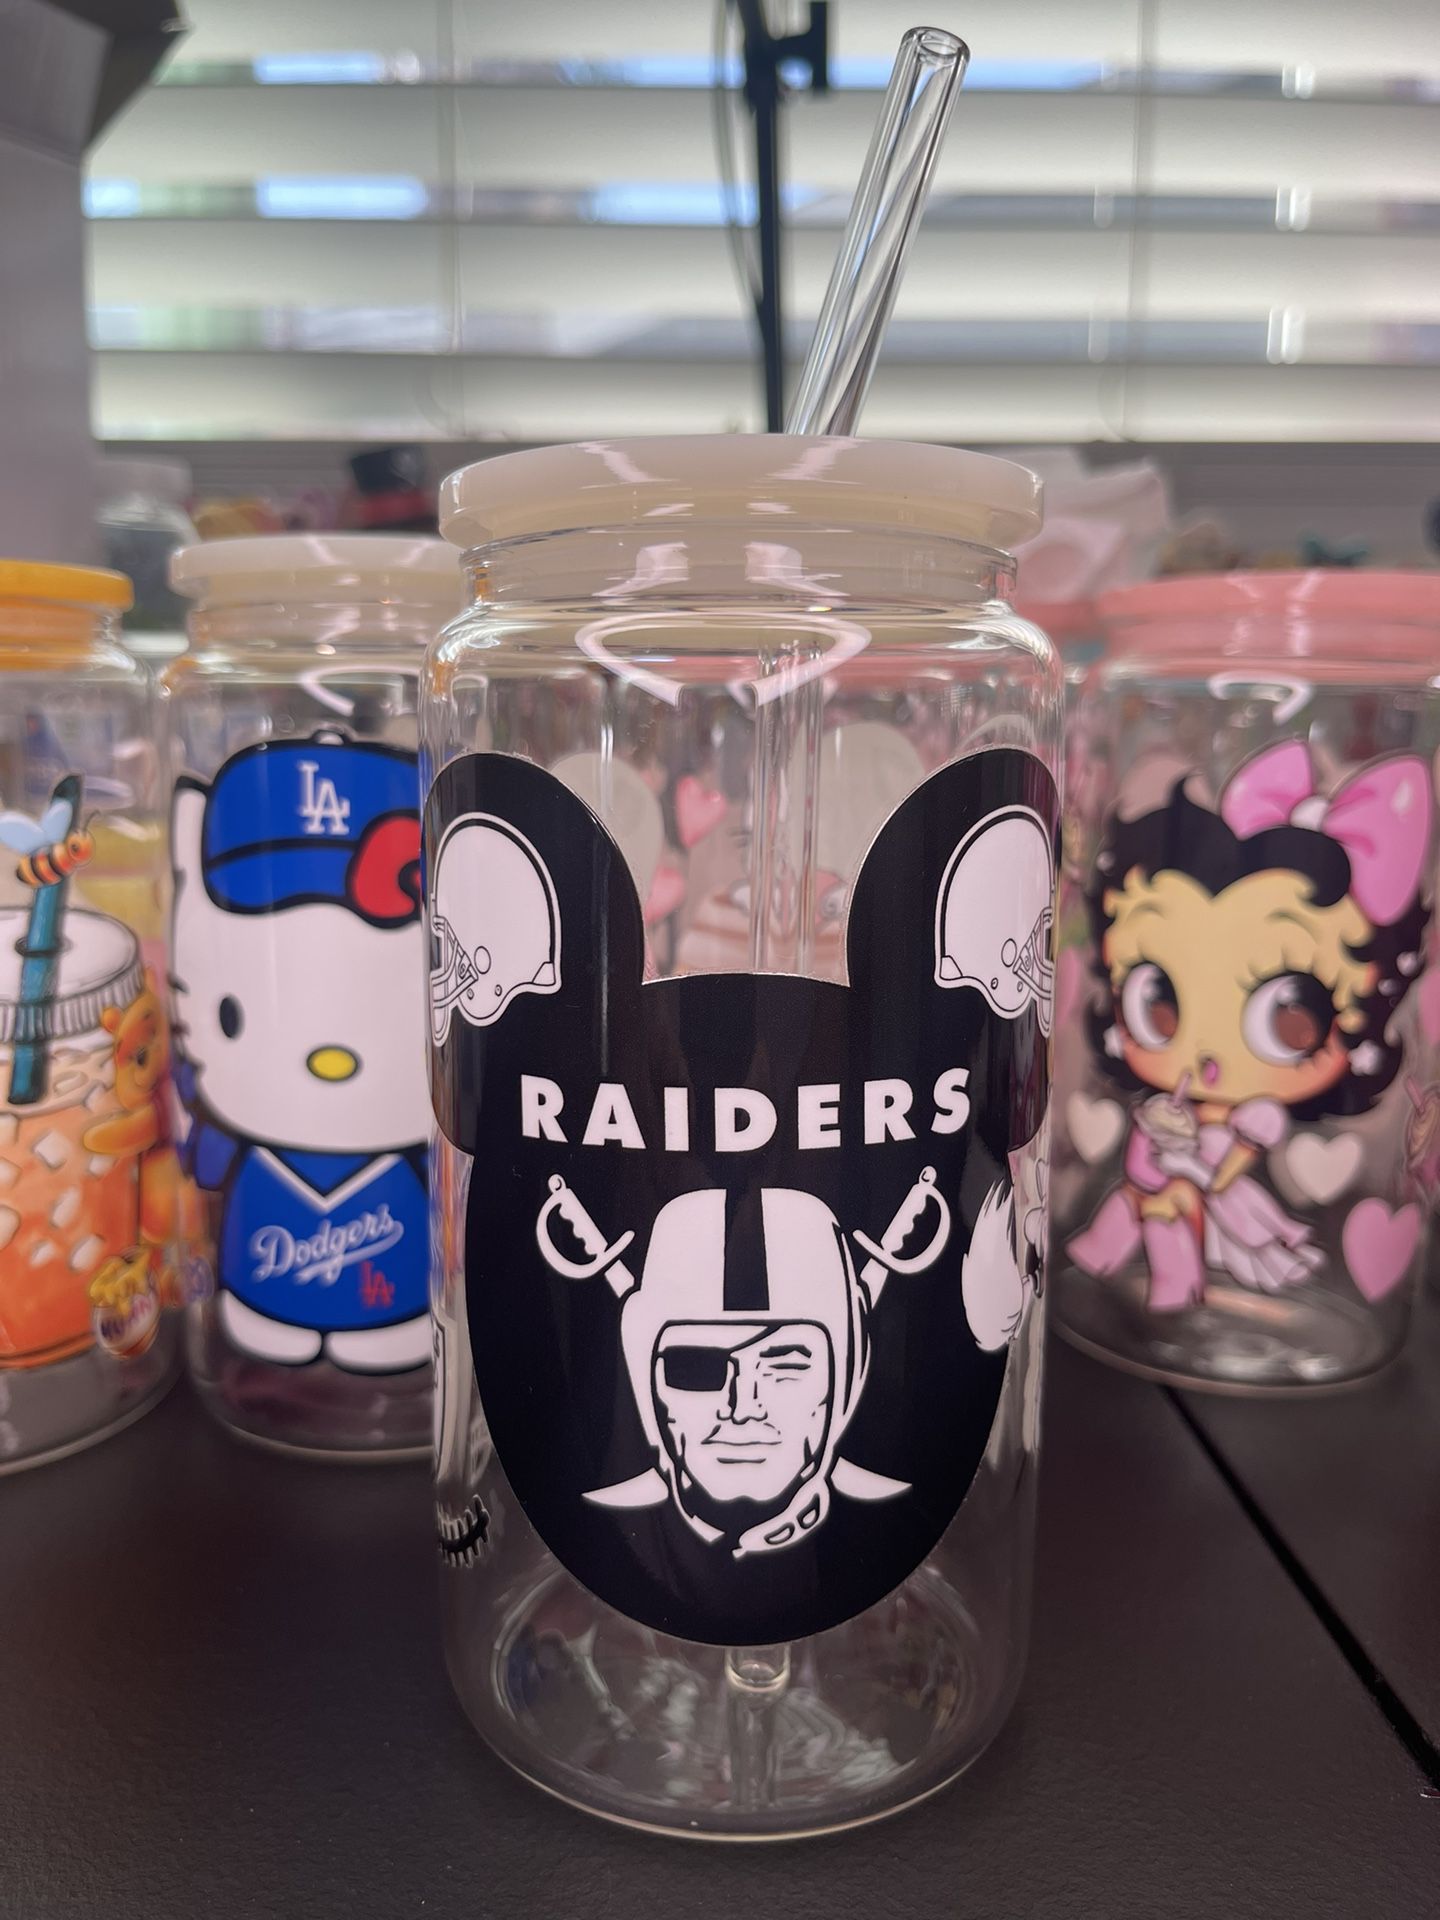 Raiders 16oz Glass Cup w/ Glass Straw 